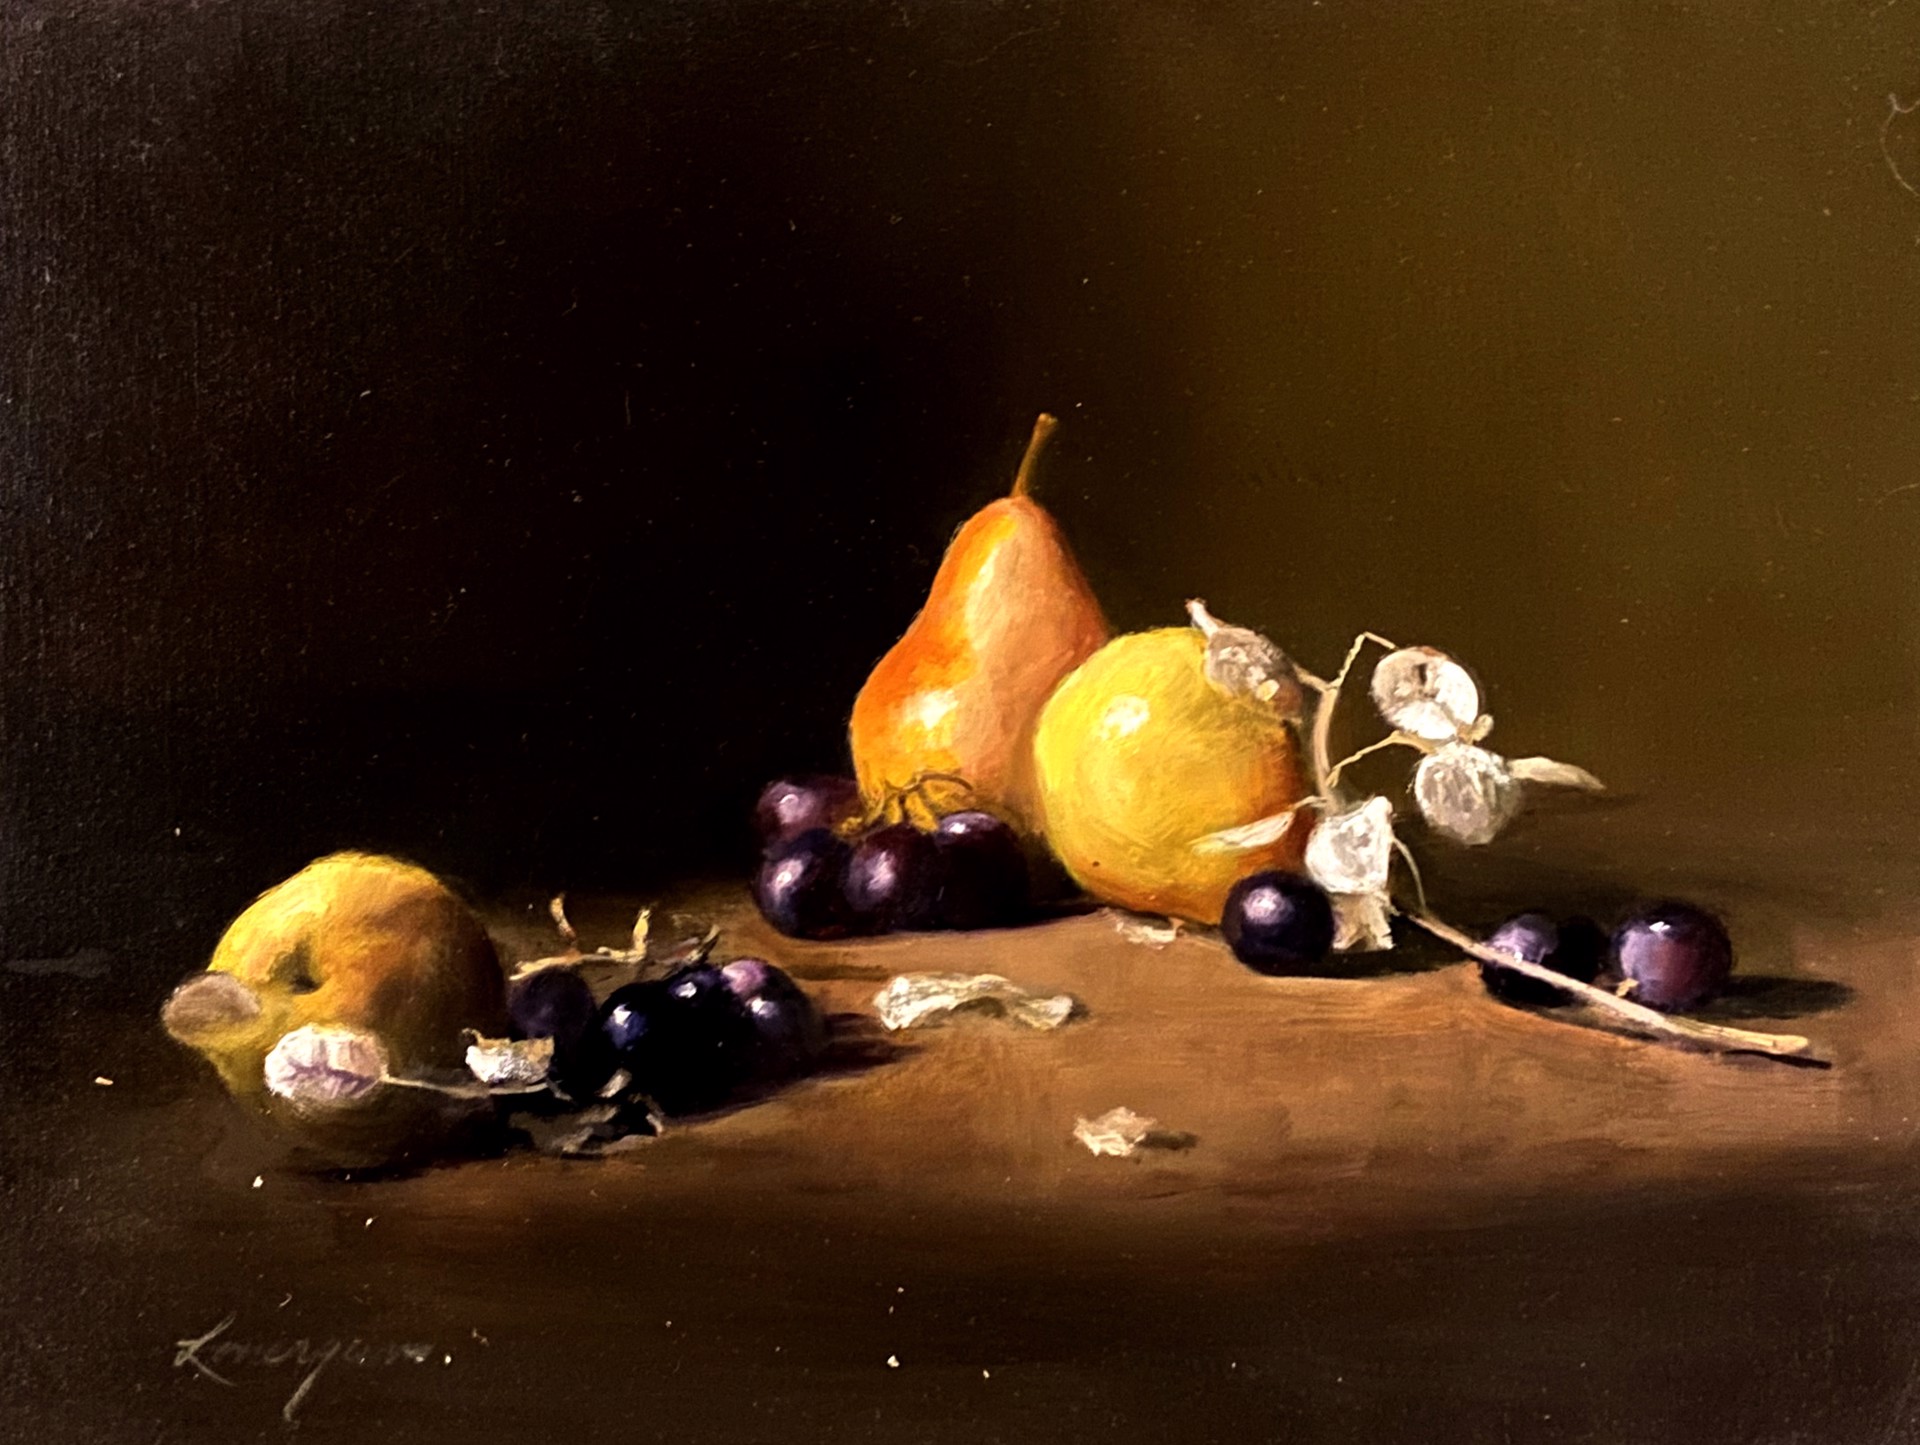 Pears & Grapes by John Lonergan